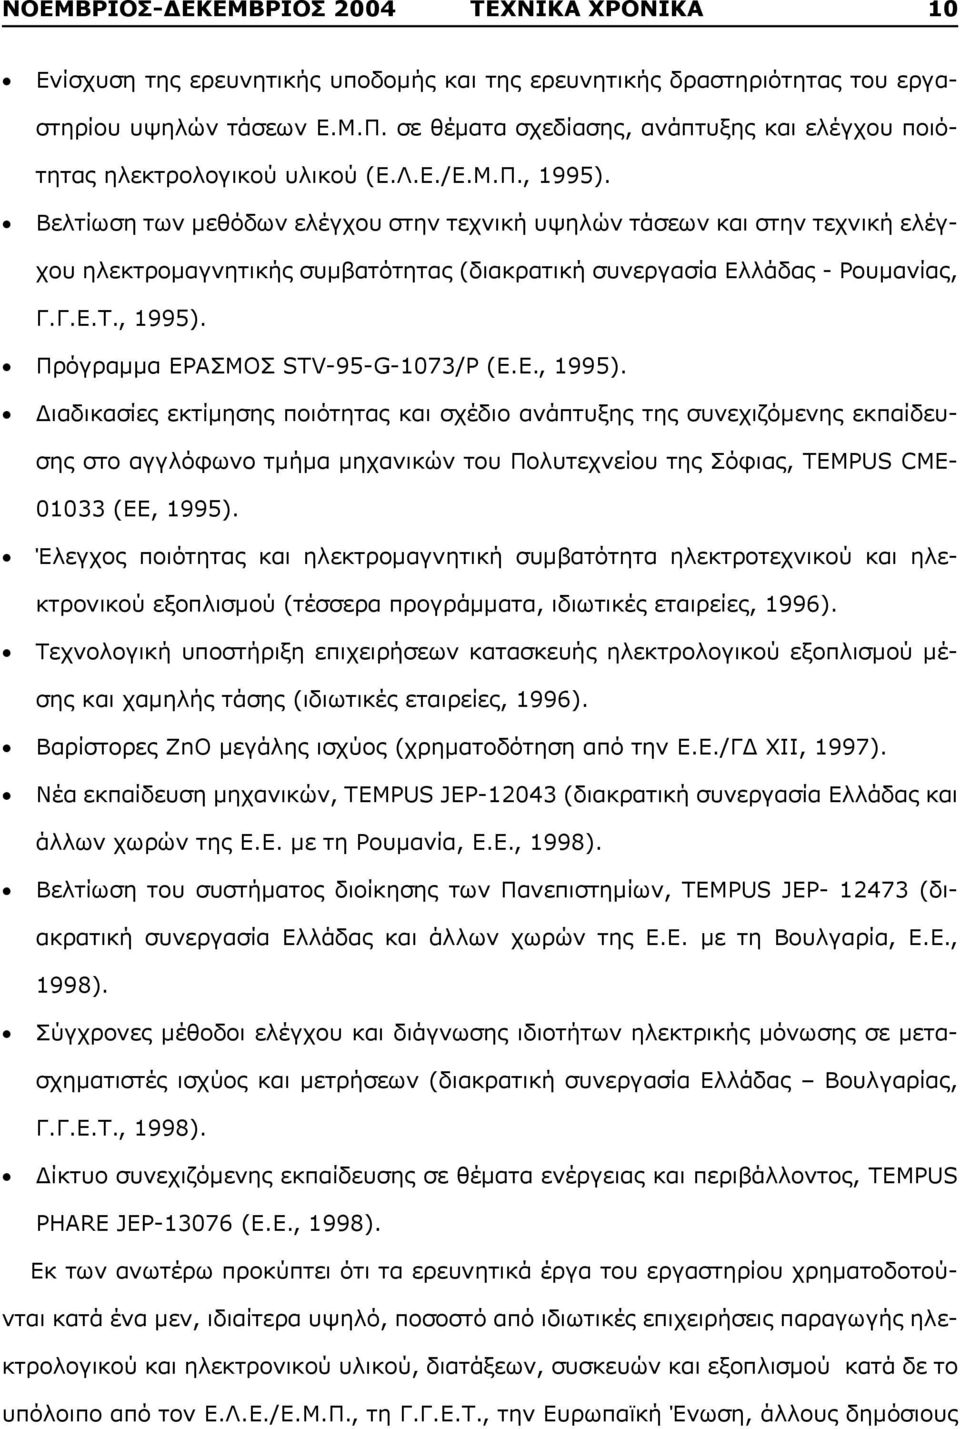 Βελτίωση των μεθόδων ελέγχου στην τεχνική υψηλών τάσεων και στην τεχνική ελέγχου ηλεκτρομαγνητικής συμβατότητας (διακρατική συνεργασία Ελλάδας - Ρουμανίας, Γ.Γ.Ε.Τ., 1995).